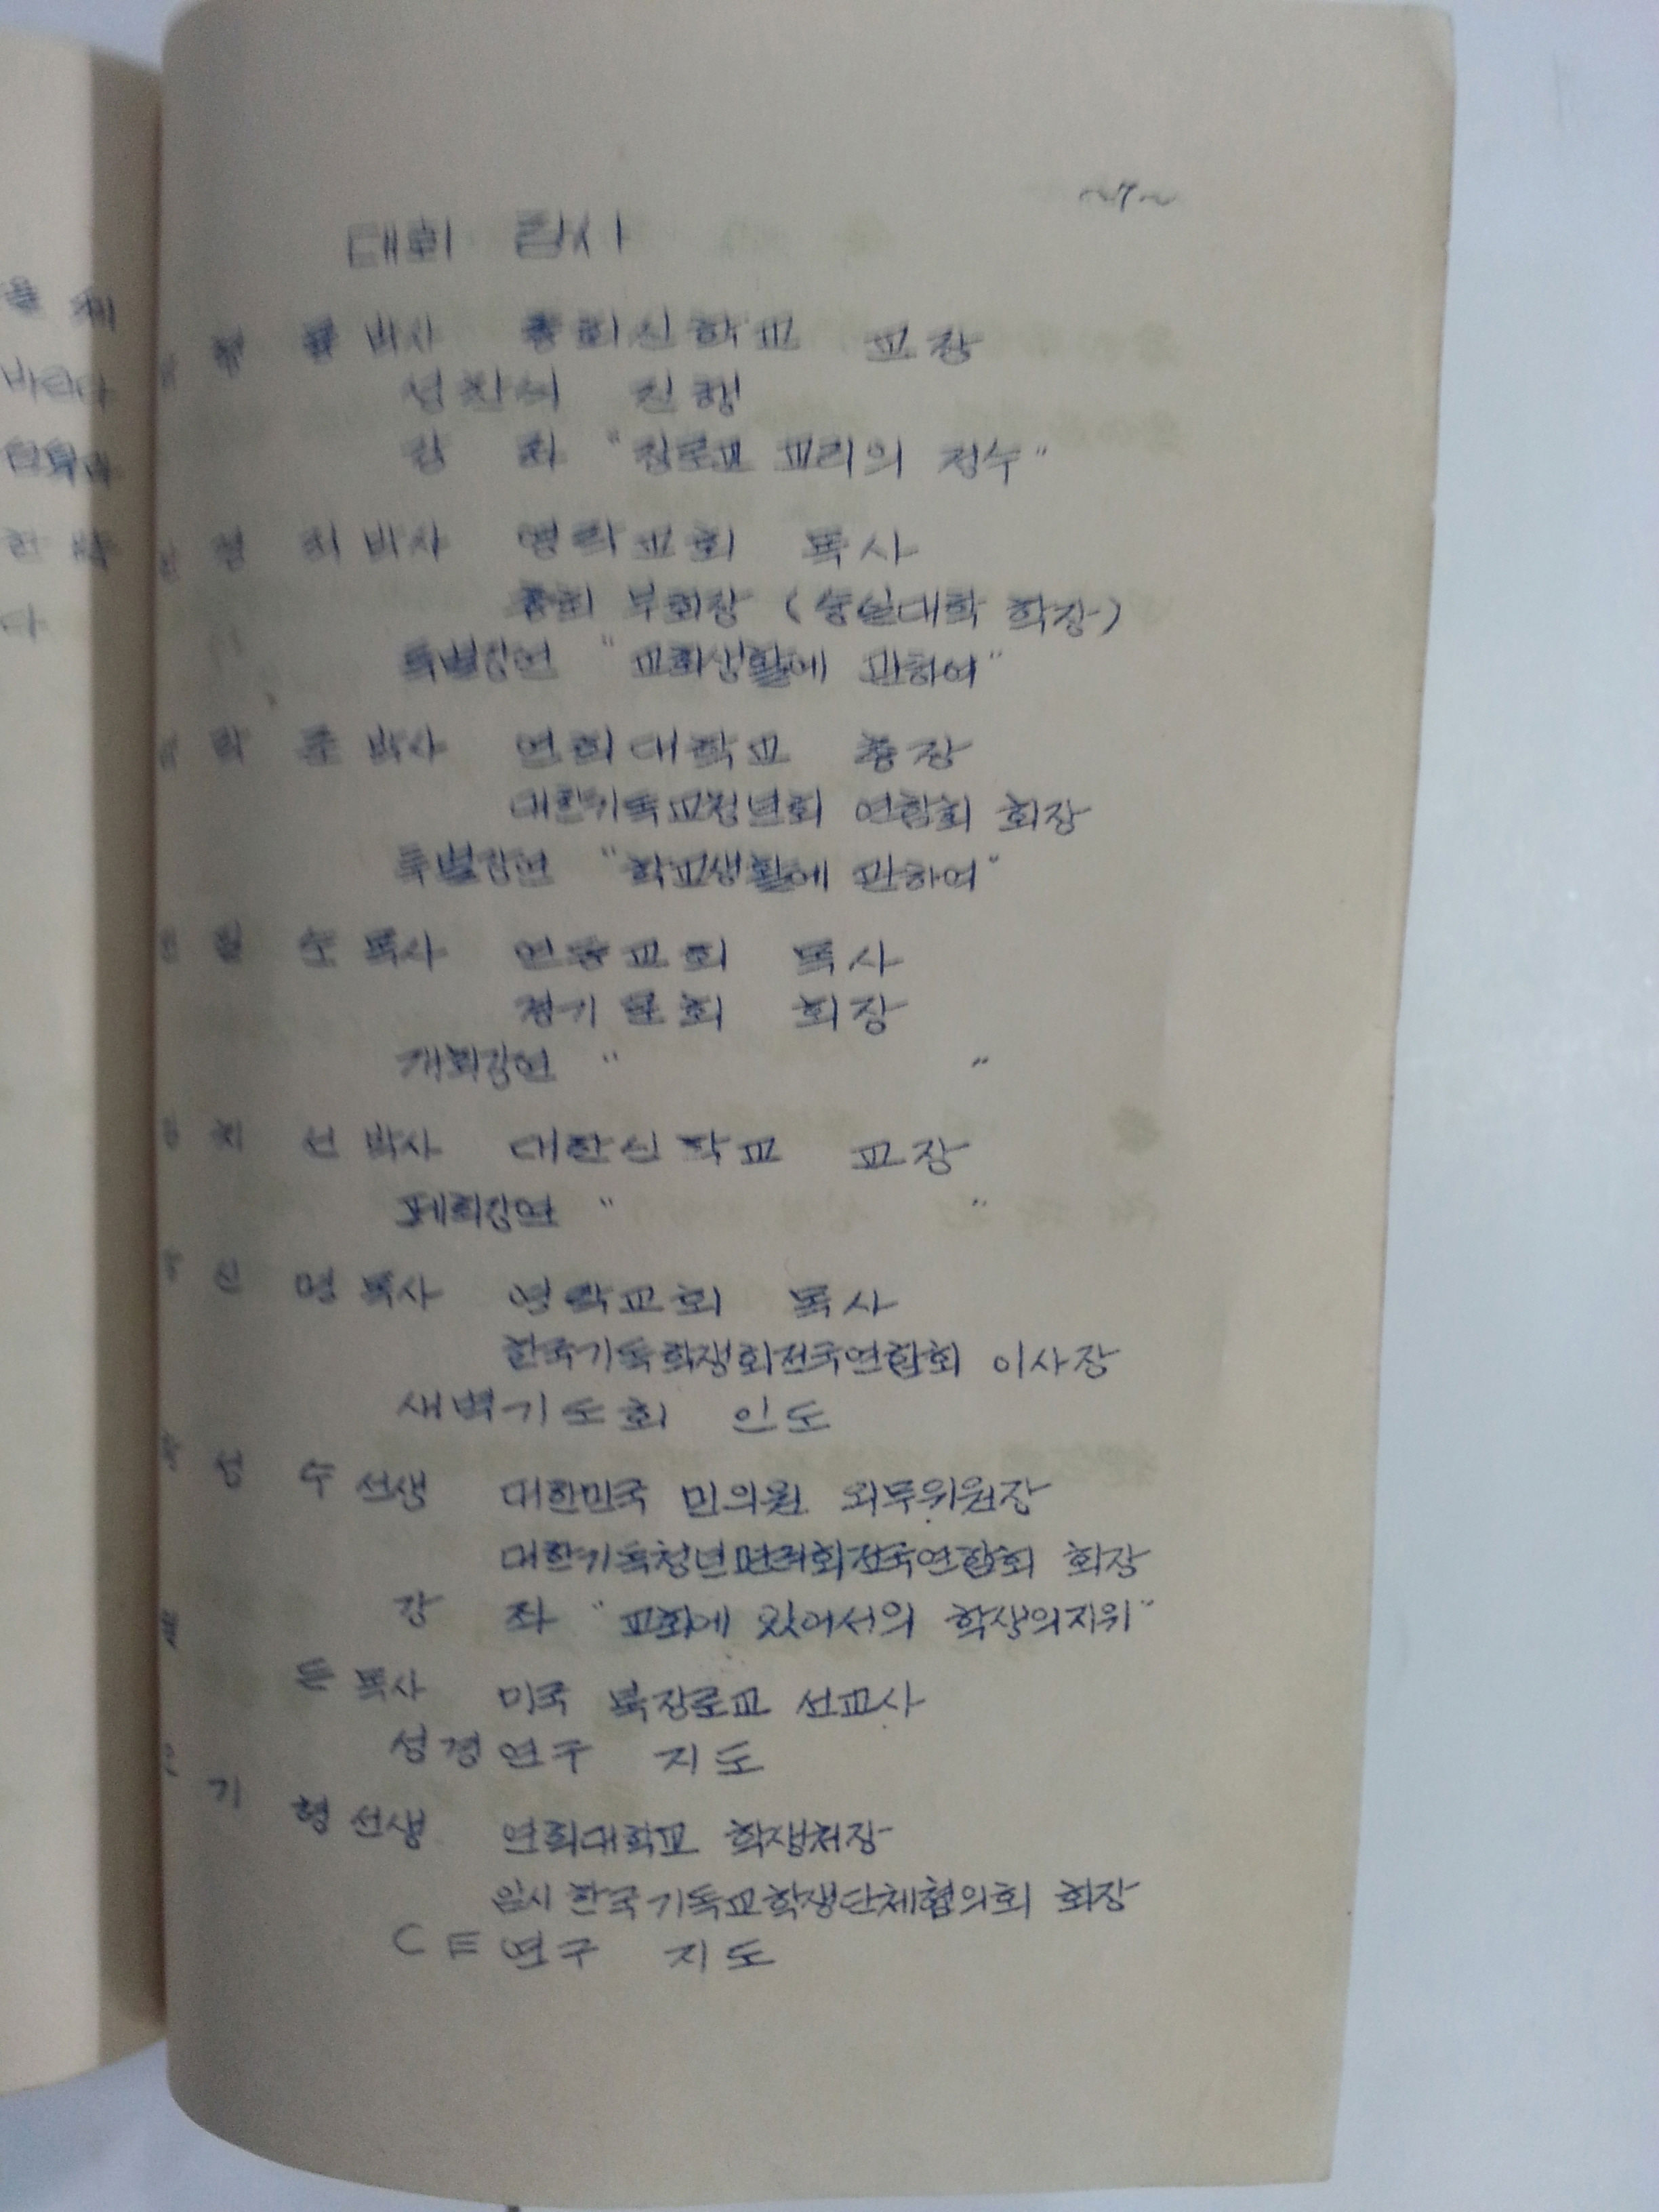 경기노회CE학생대회 팜플렛 (등사본)